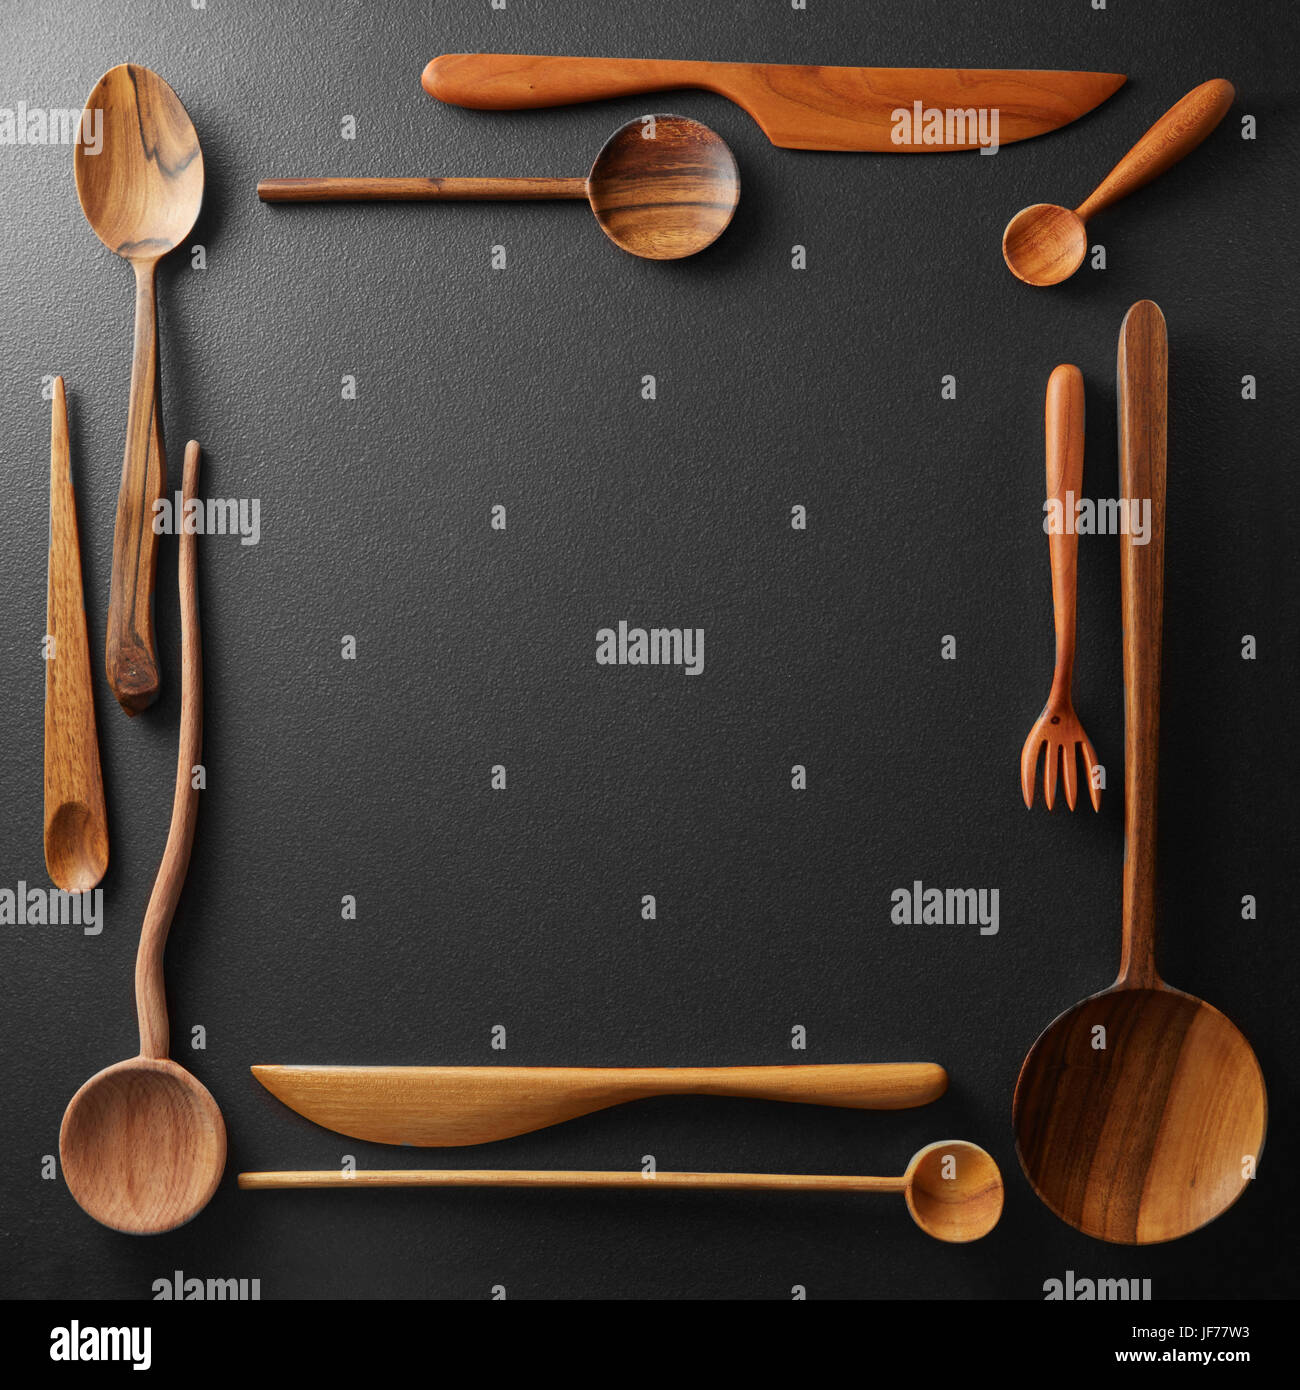 frame of wooden kitchen utensil Stock Photo